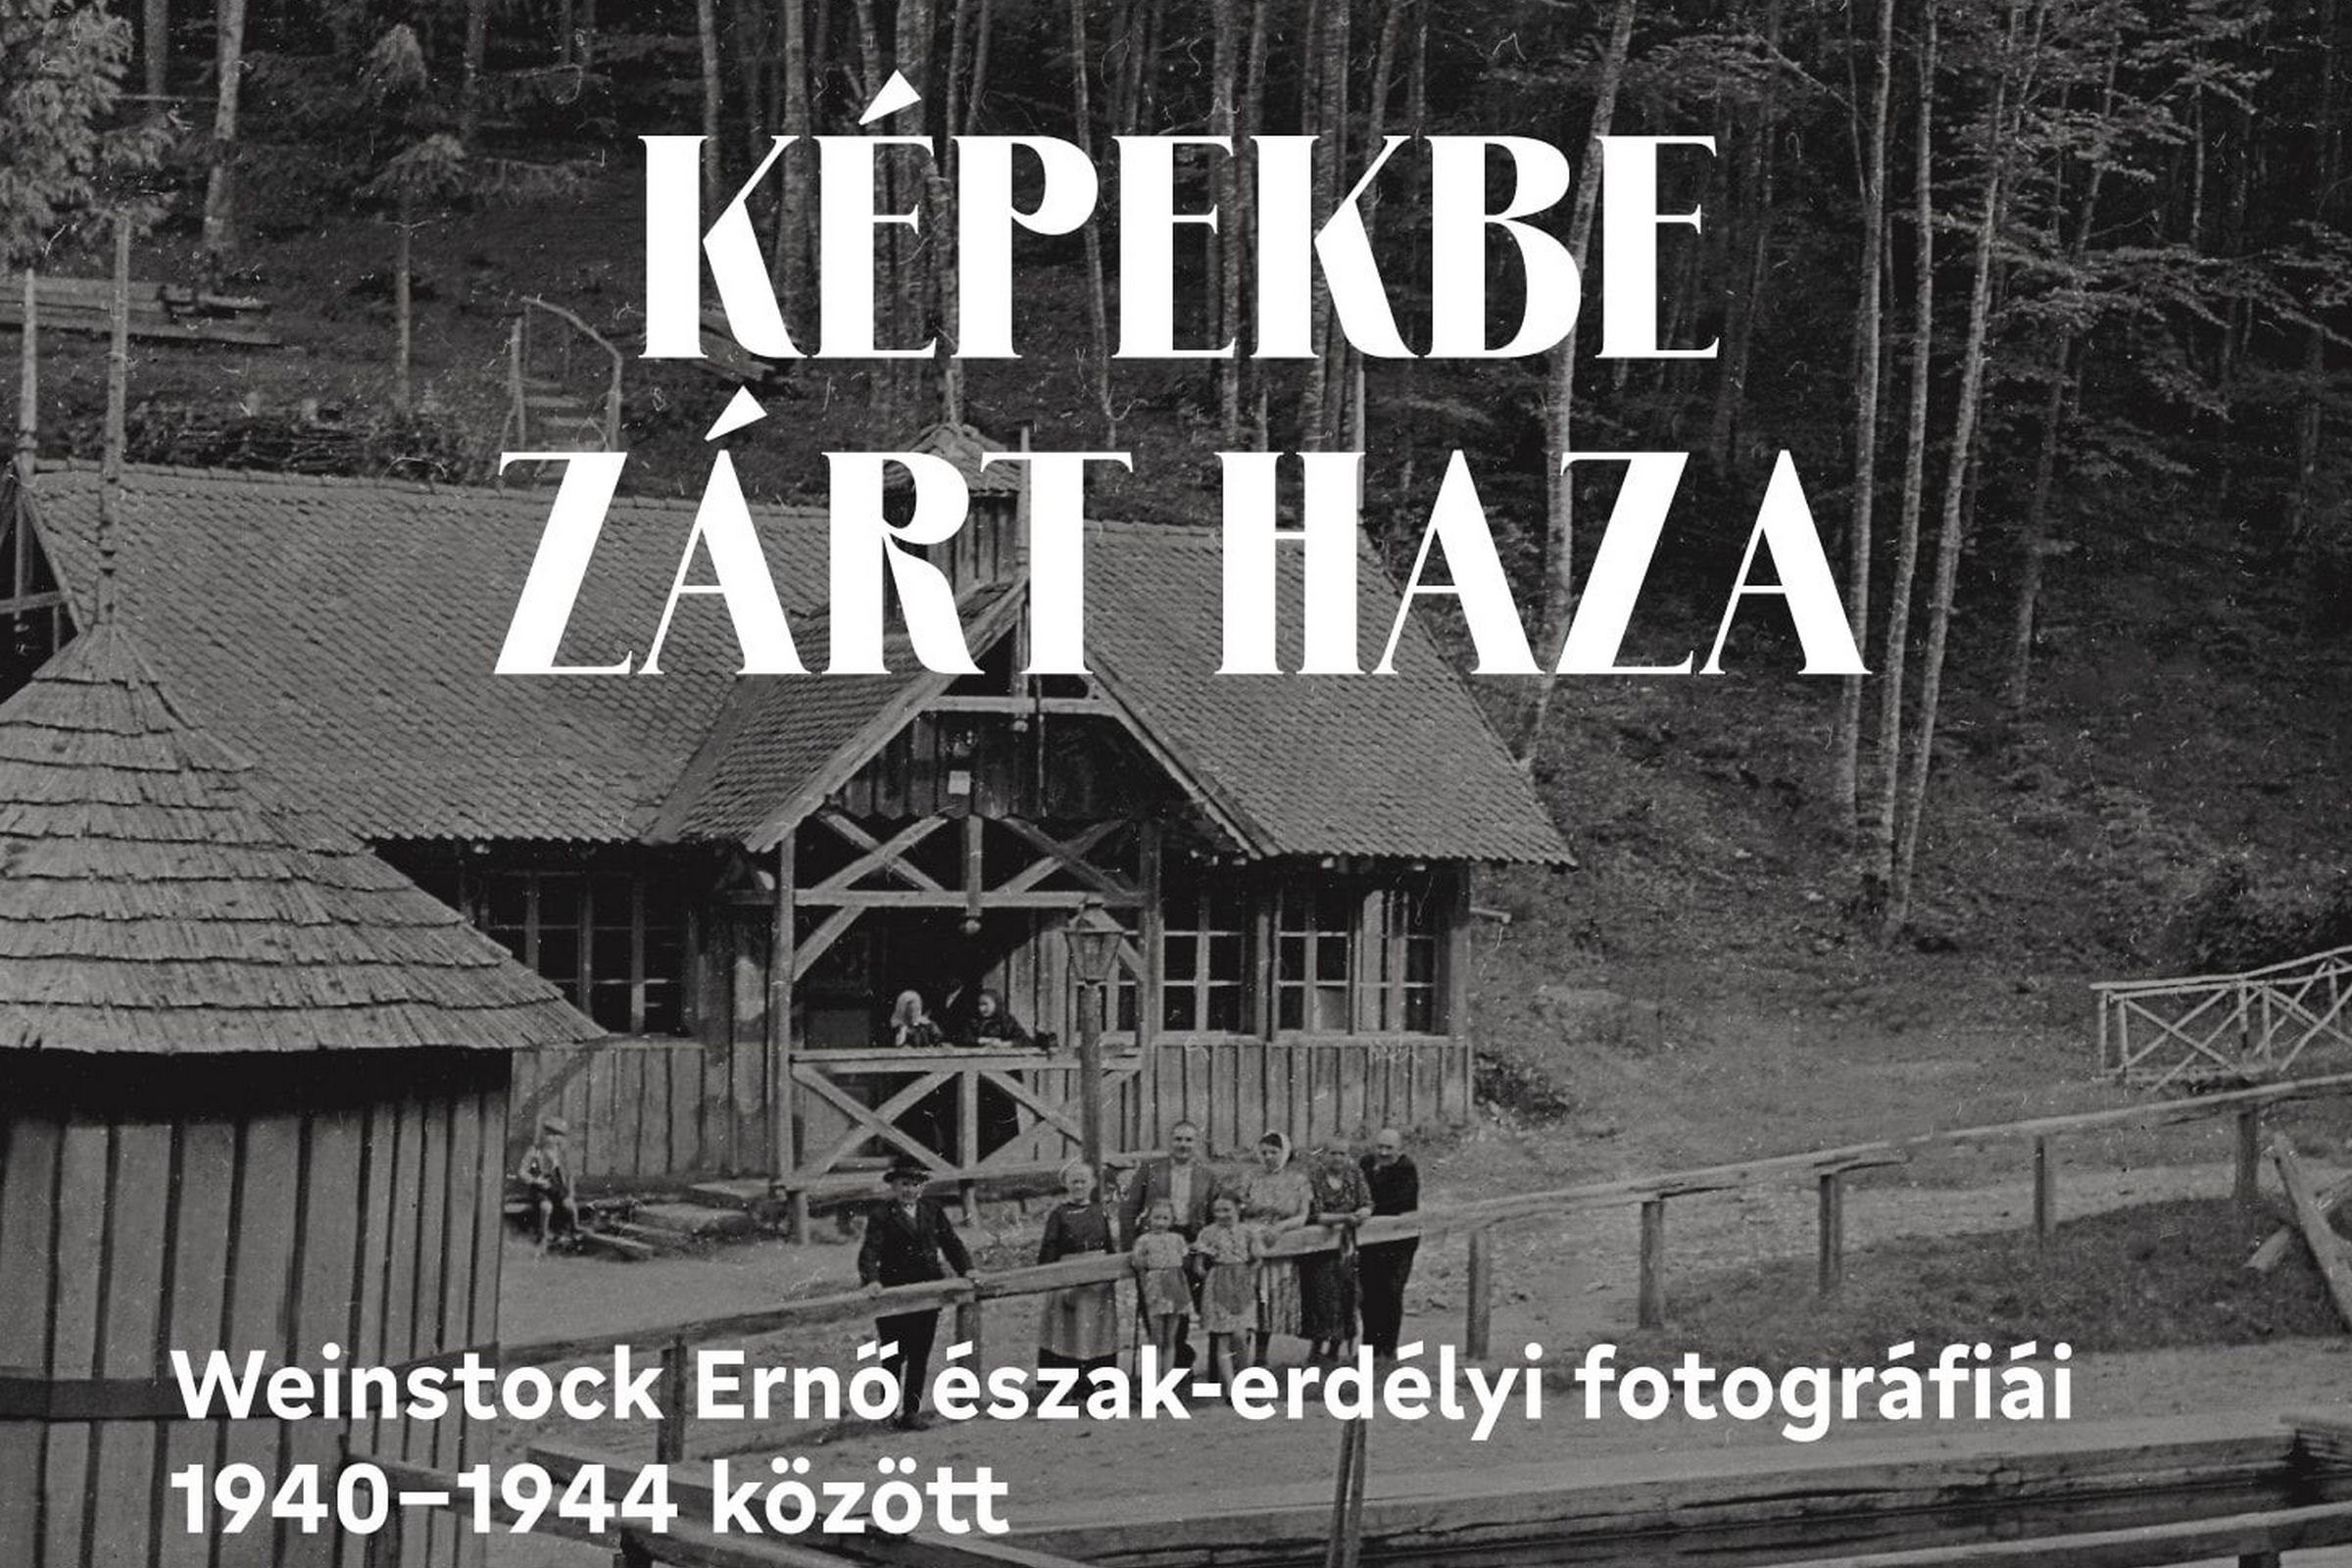 Aki a kicsi magyar világban végigfotózta Észak-Erdélyt